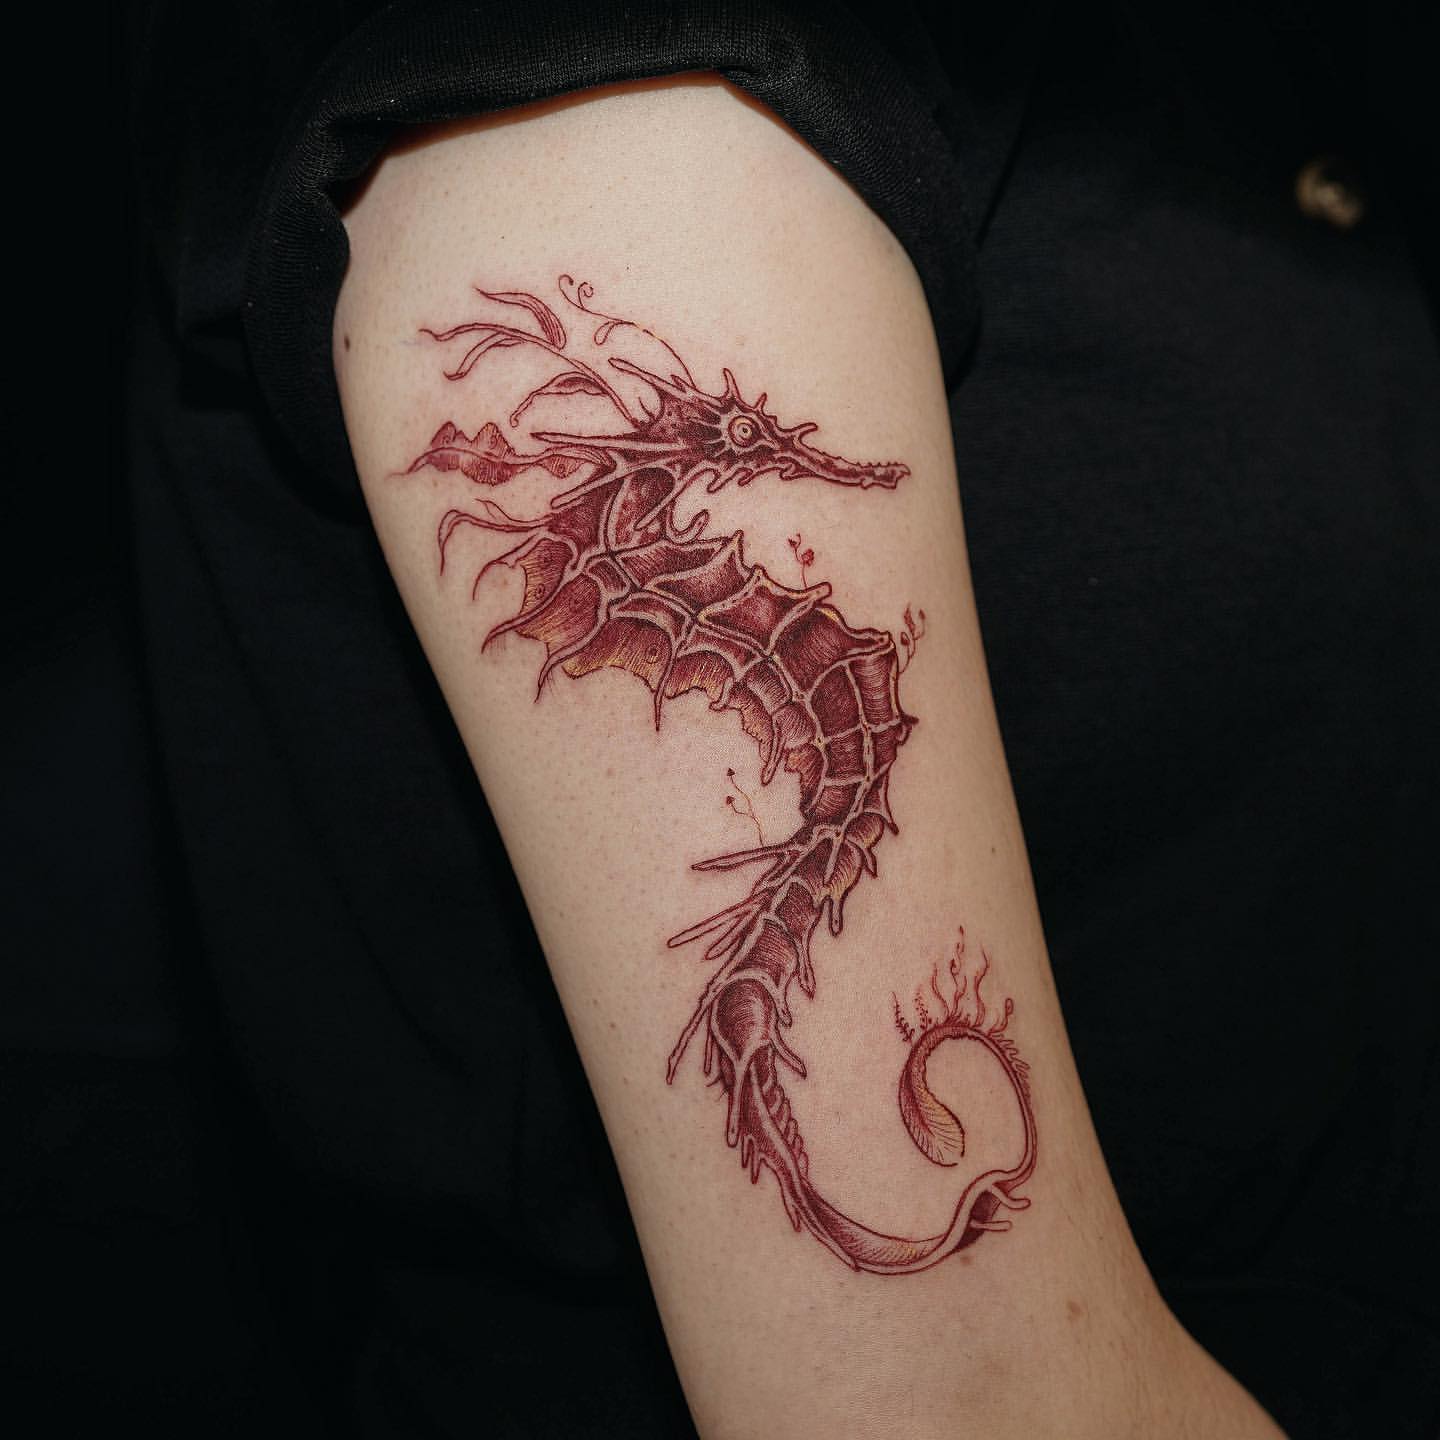 Seahorse Tattoo Ideas 20